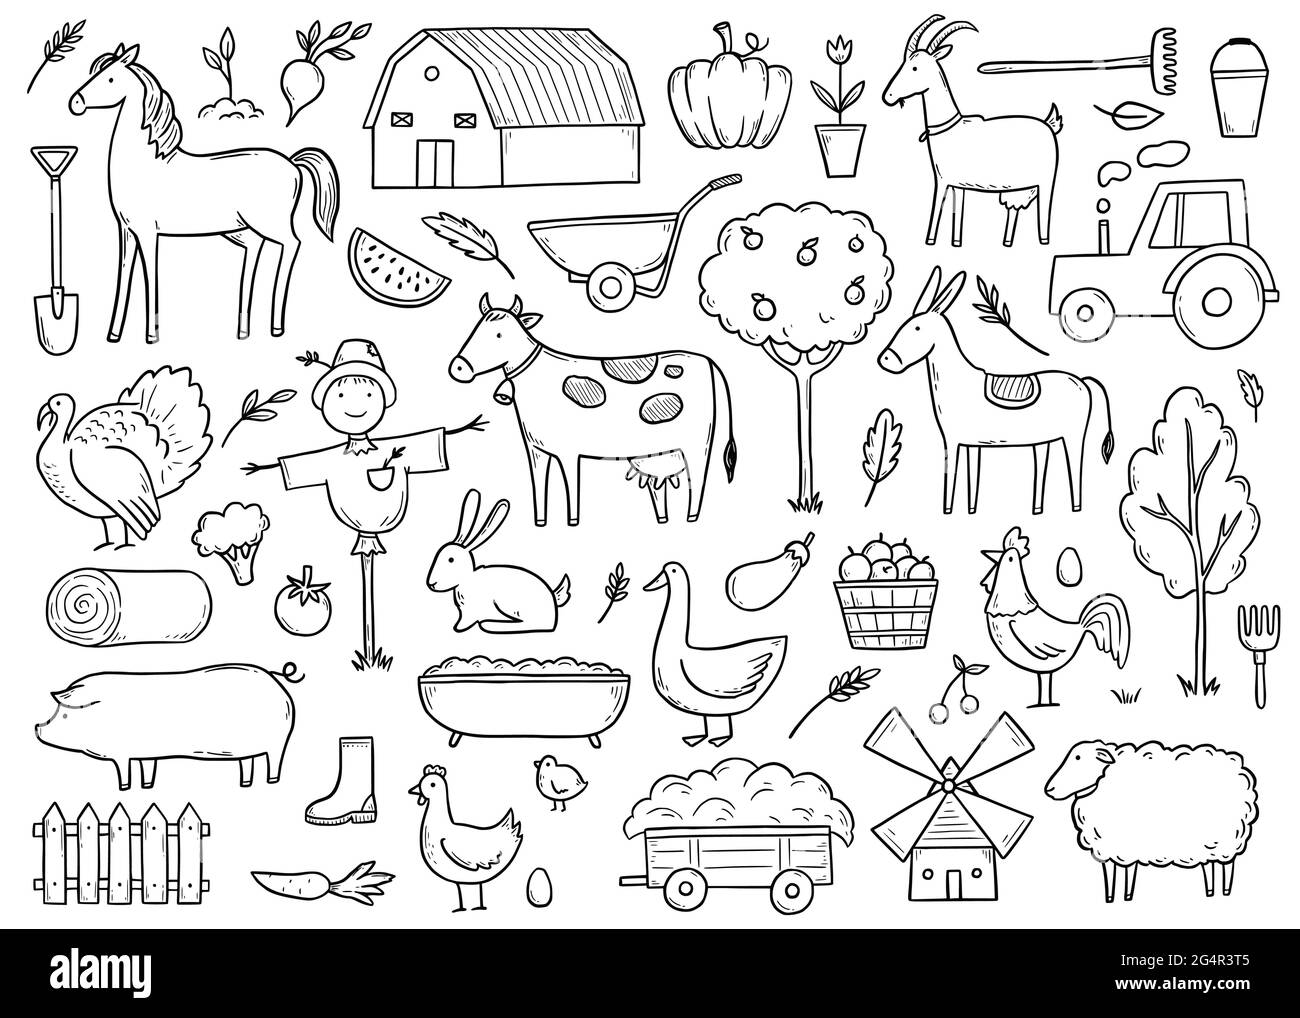 Handgezeichnetes Set Nutztier, Pferd, Kuh, Bauernfutter. Doodle-Skizzenstil. Landwirtschaft Lebenshintergrund, Symbol. Isolierte Vektordarstellung. Stock Vektor